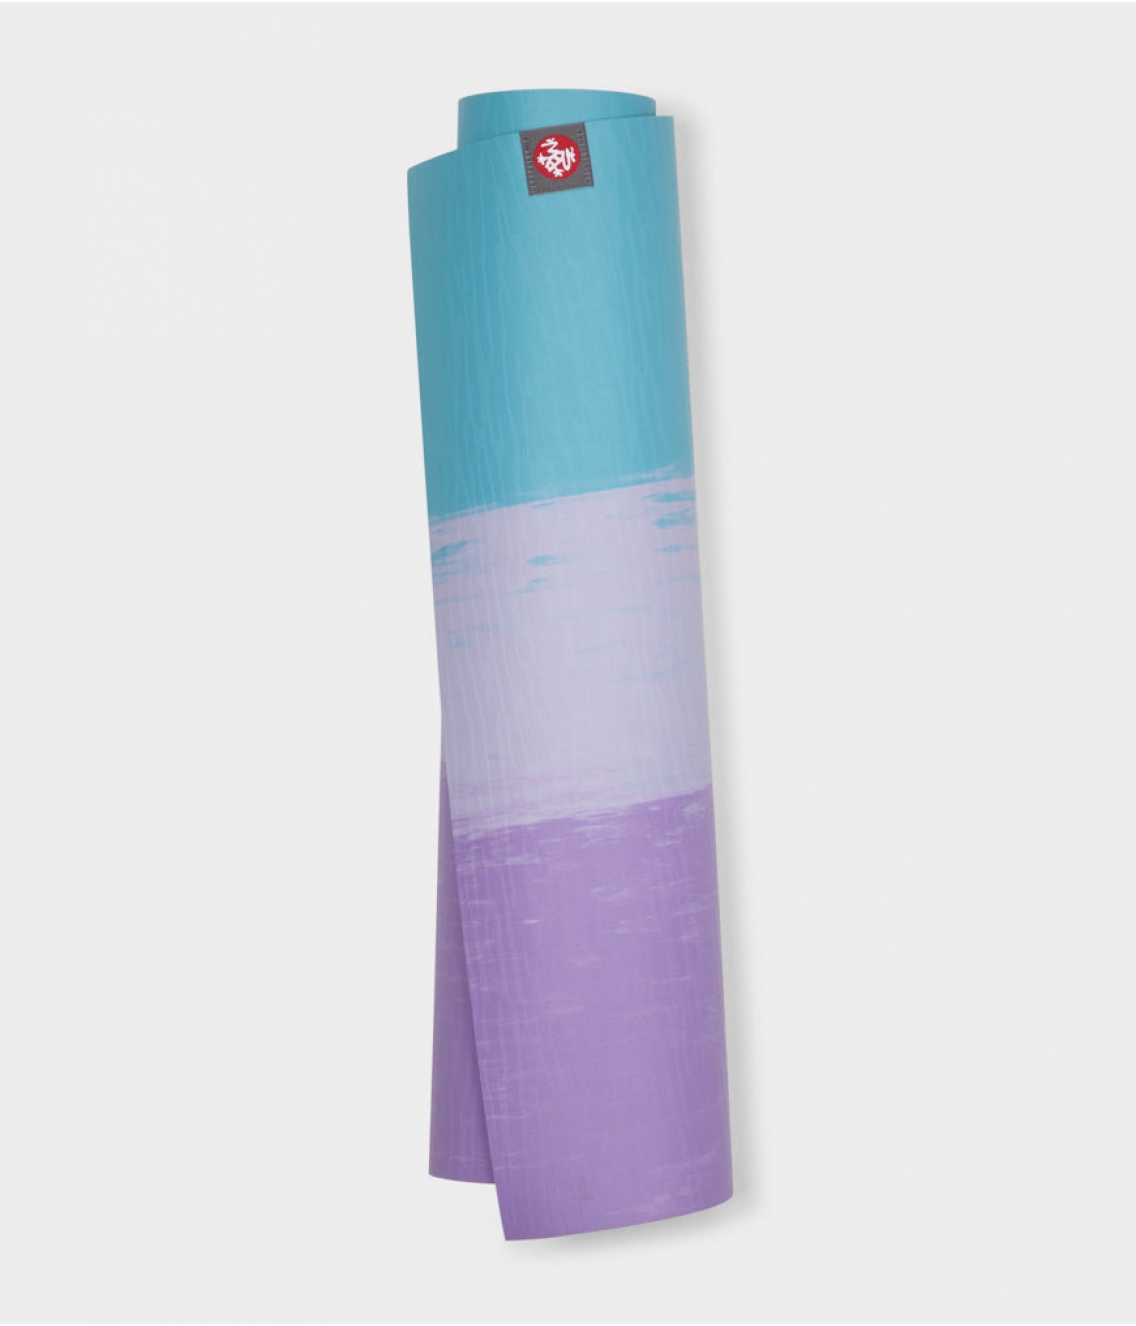 Профессиональный каучуковый коврик для йоги Manduka eKO lite 180*61*0,4 см - Aqua Stripe